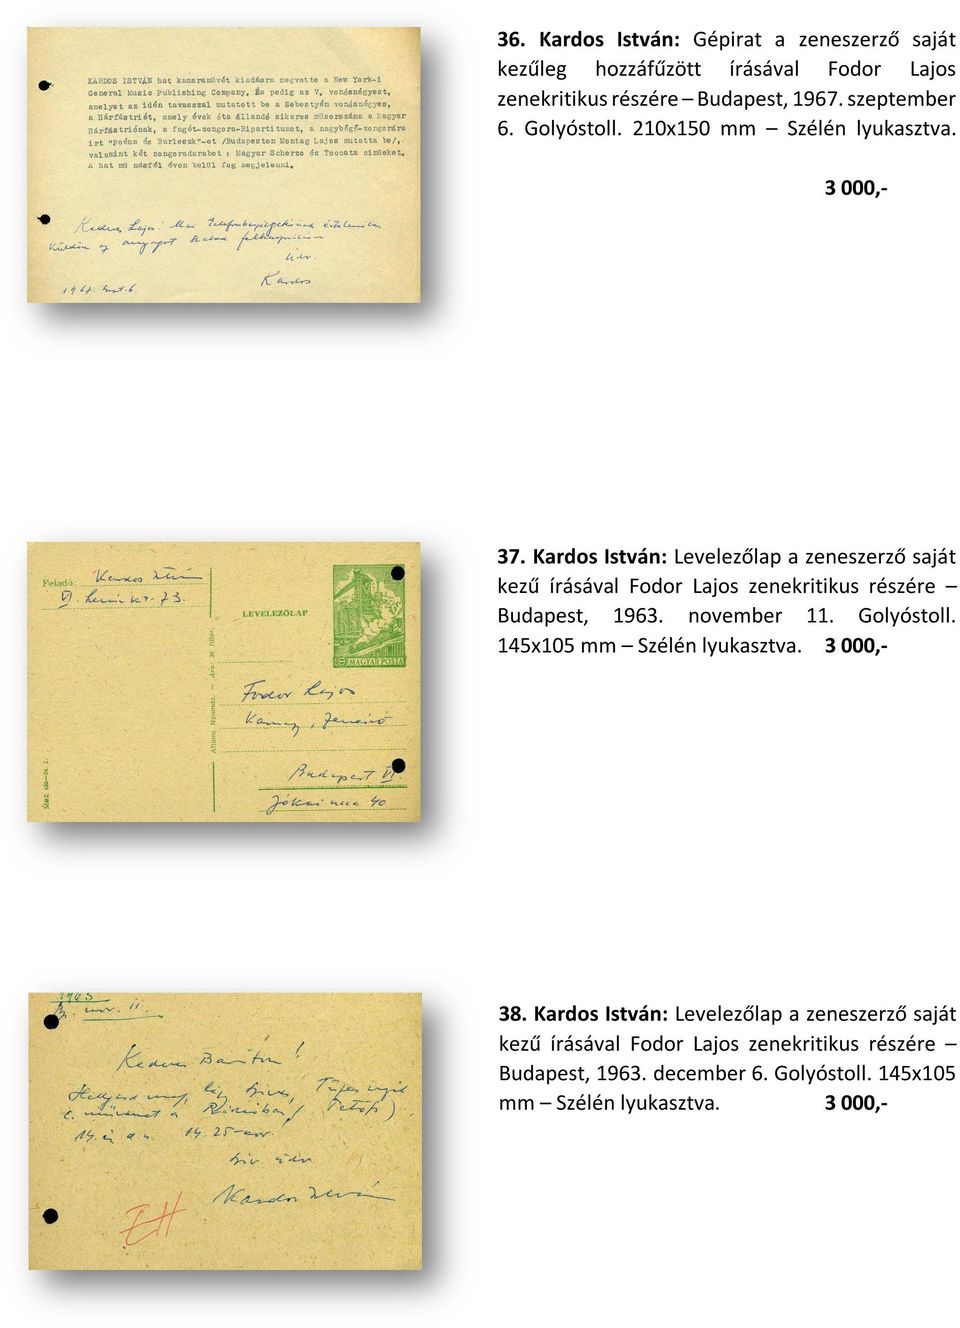 Kardos István: Levelezőlap a zeneszerző saját kezű írásával Fodor Lajos zenekritikus részére Budapest, 1963. november 11. Golyóstoll.